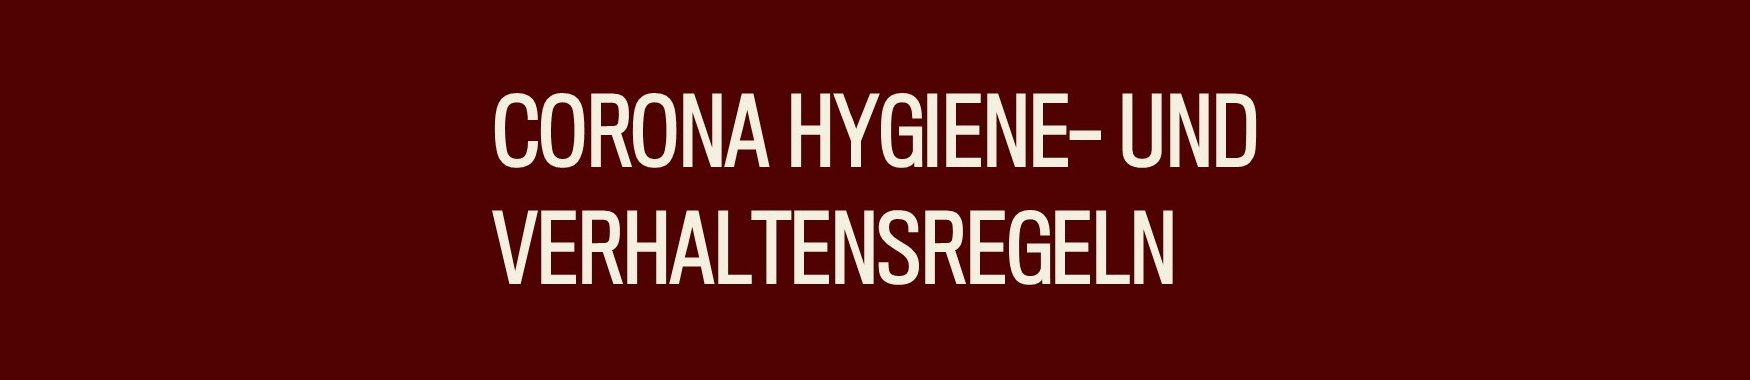 Hygiene- und Verhaltensregeln [Update 19.05.]